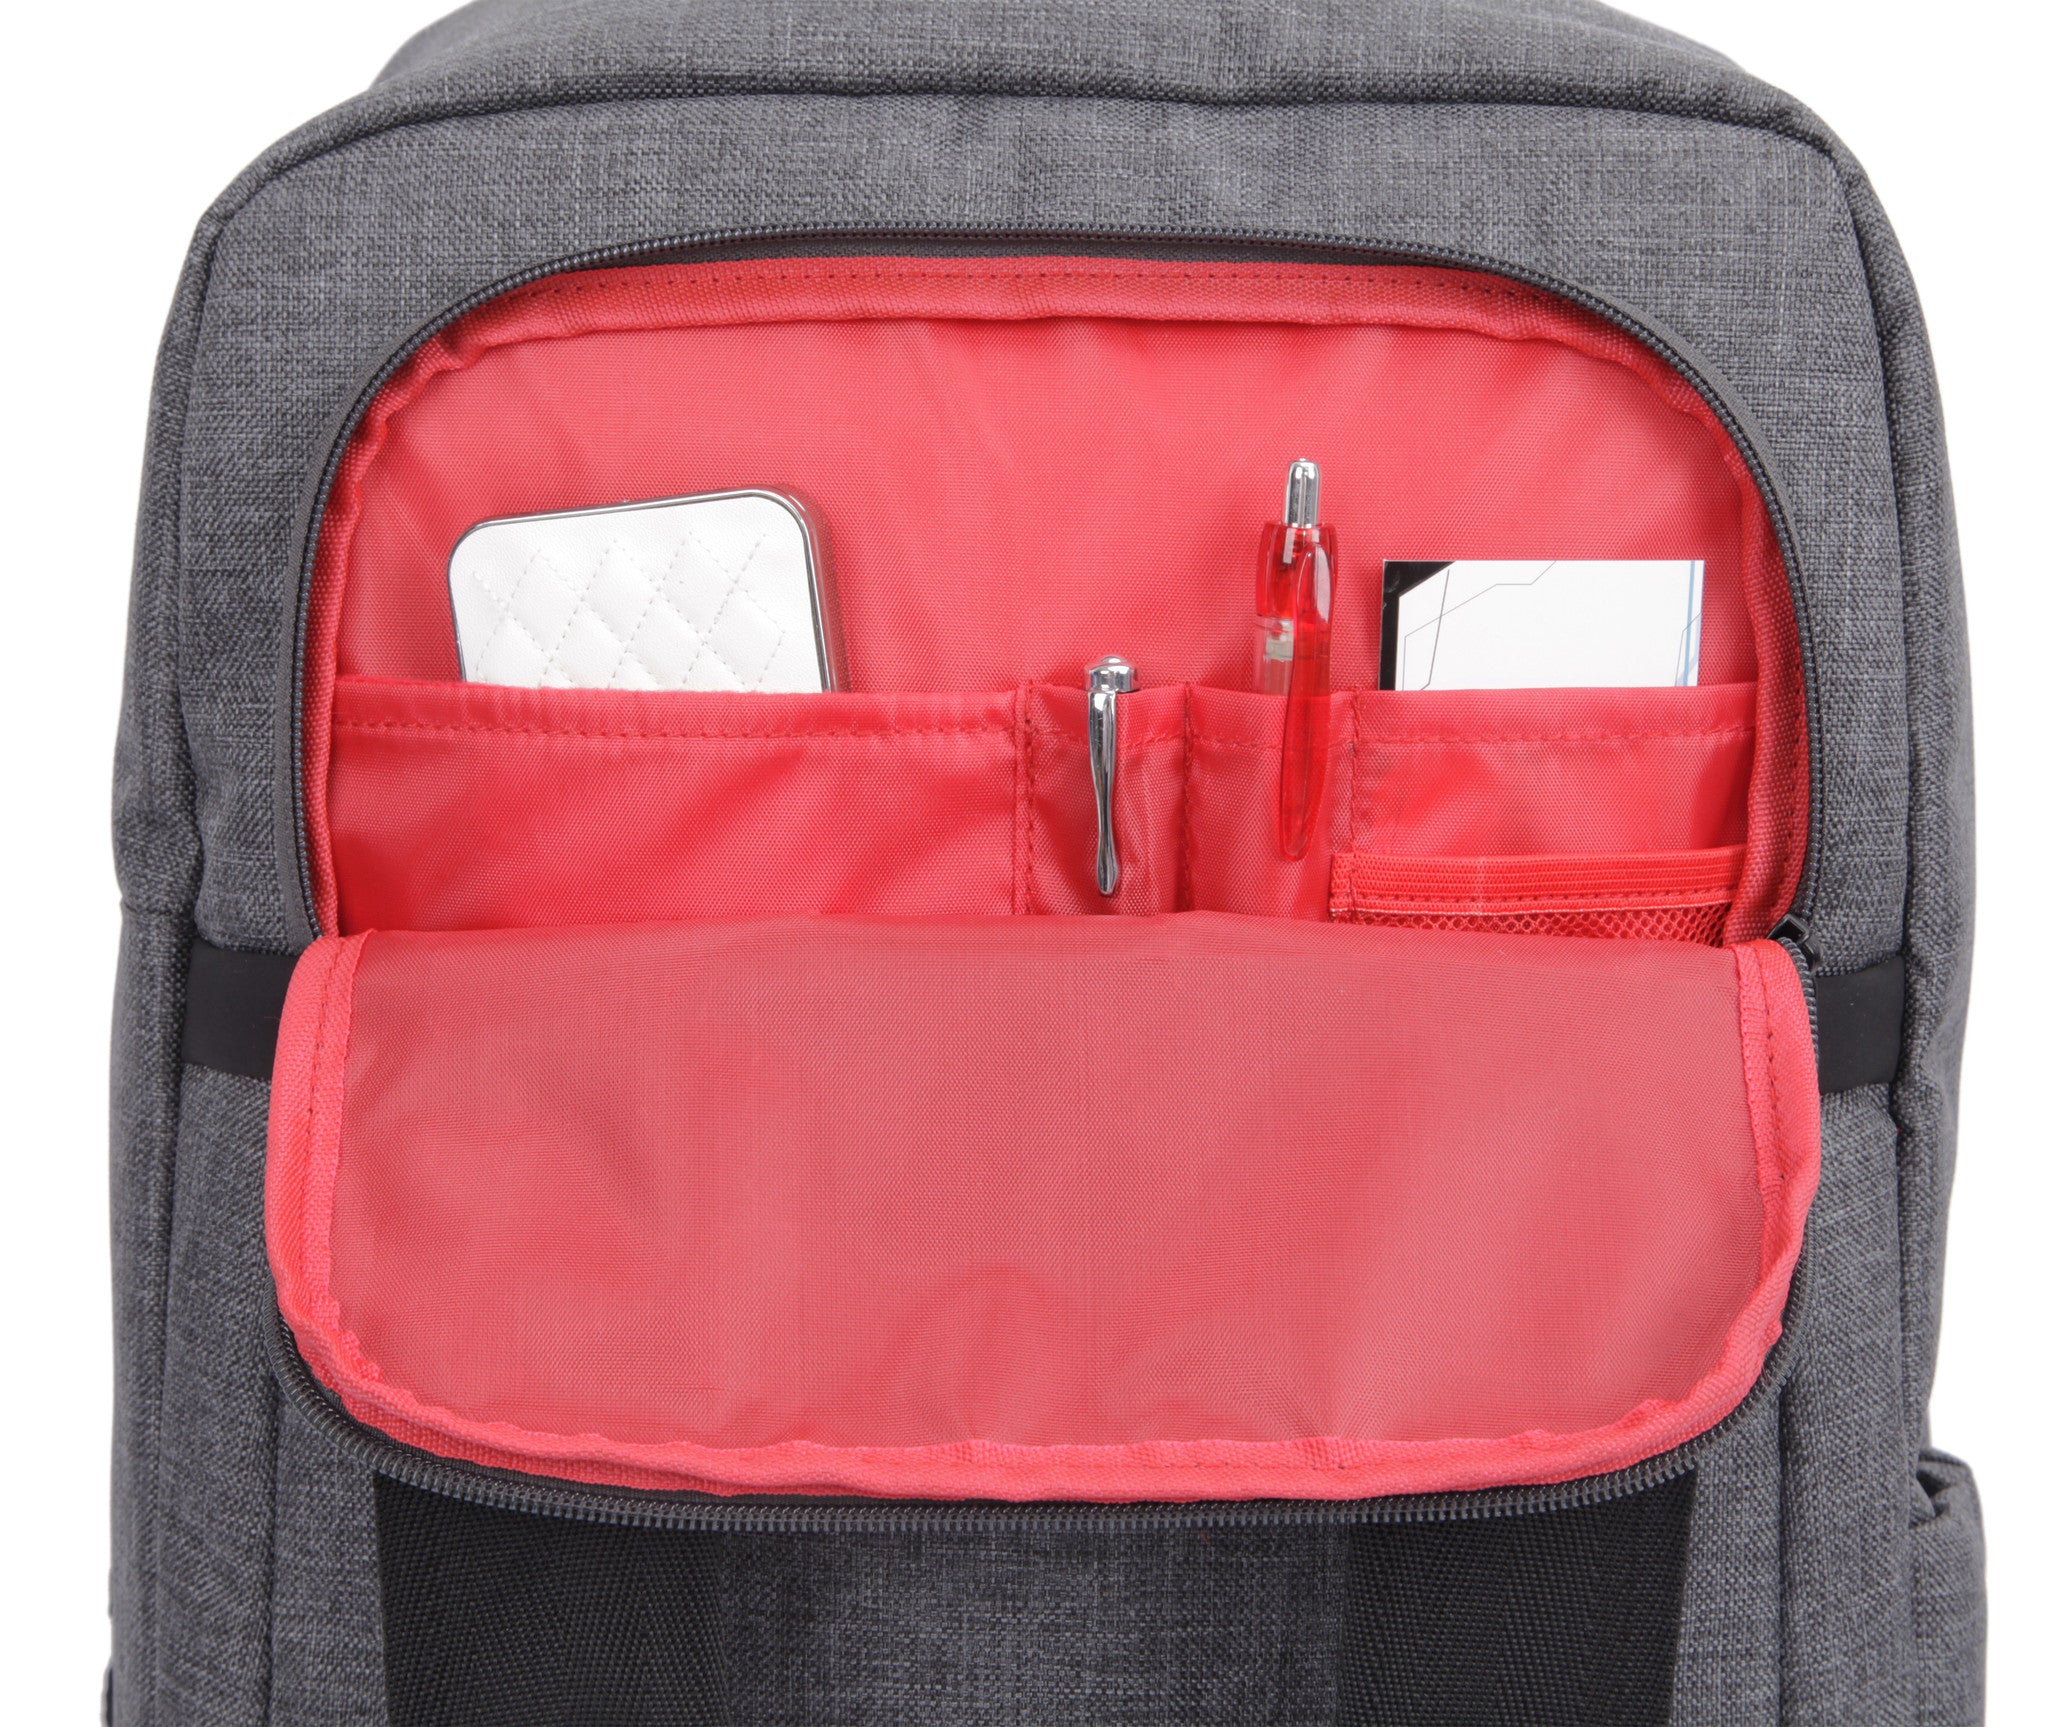 Bestlife Backpack BB-3202G-15.6'' (Grey) - OBM Distribution, Inc.